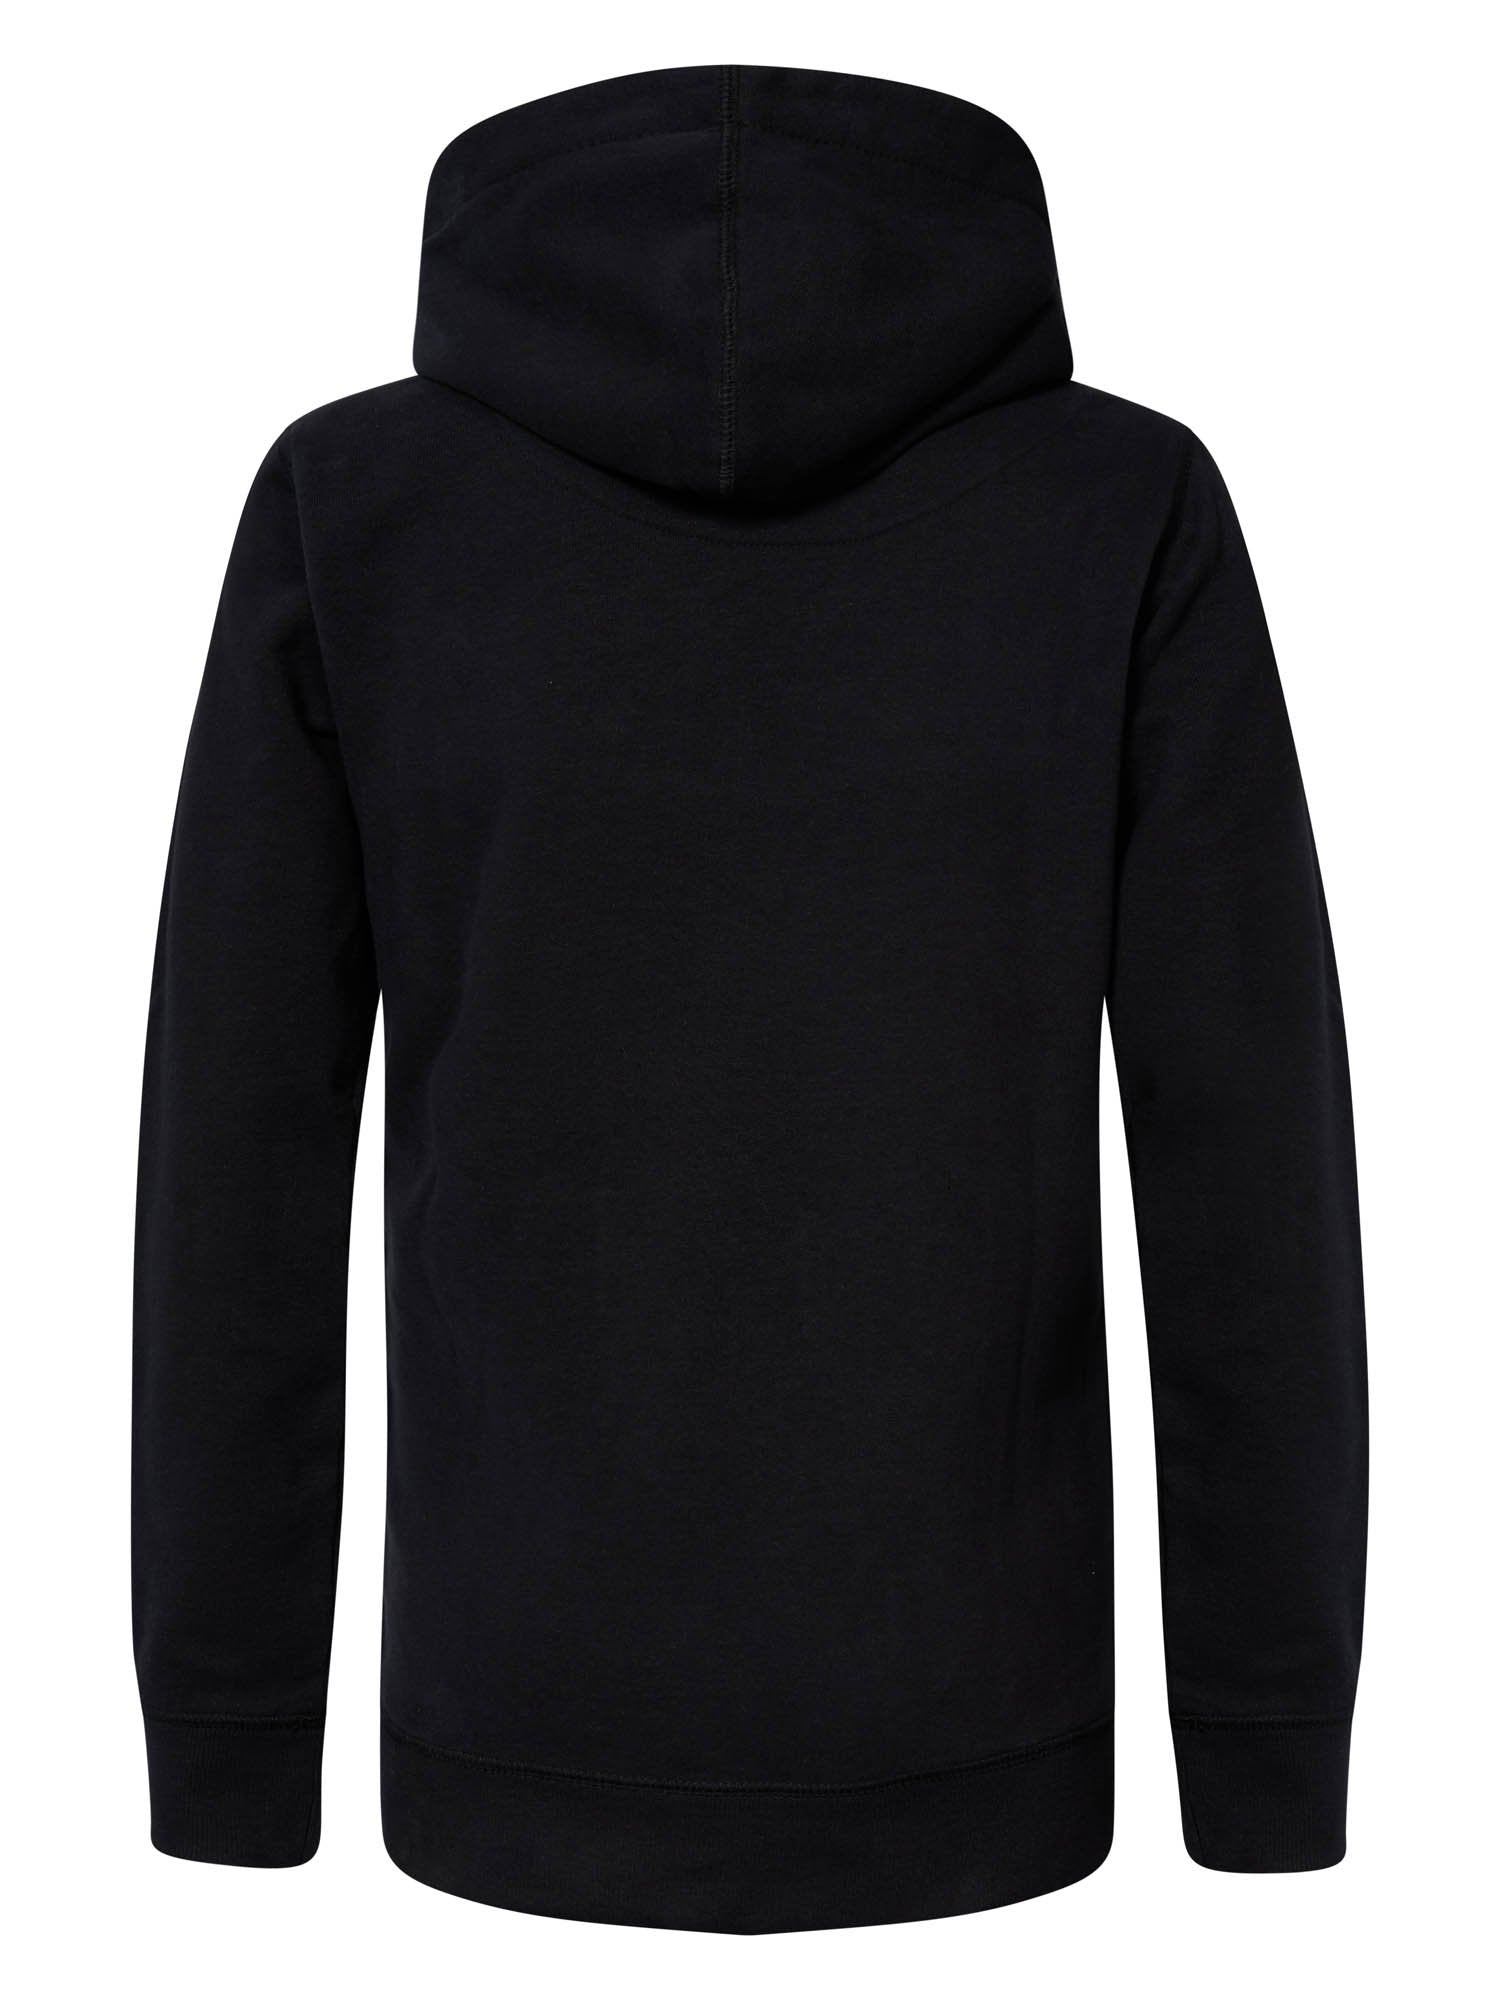 Jongens Hooded Sweater with Pocket van Petrol in de kleur Black in maat 164.